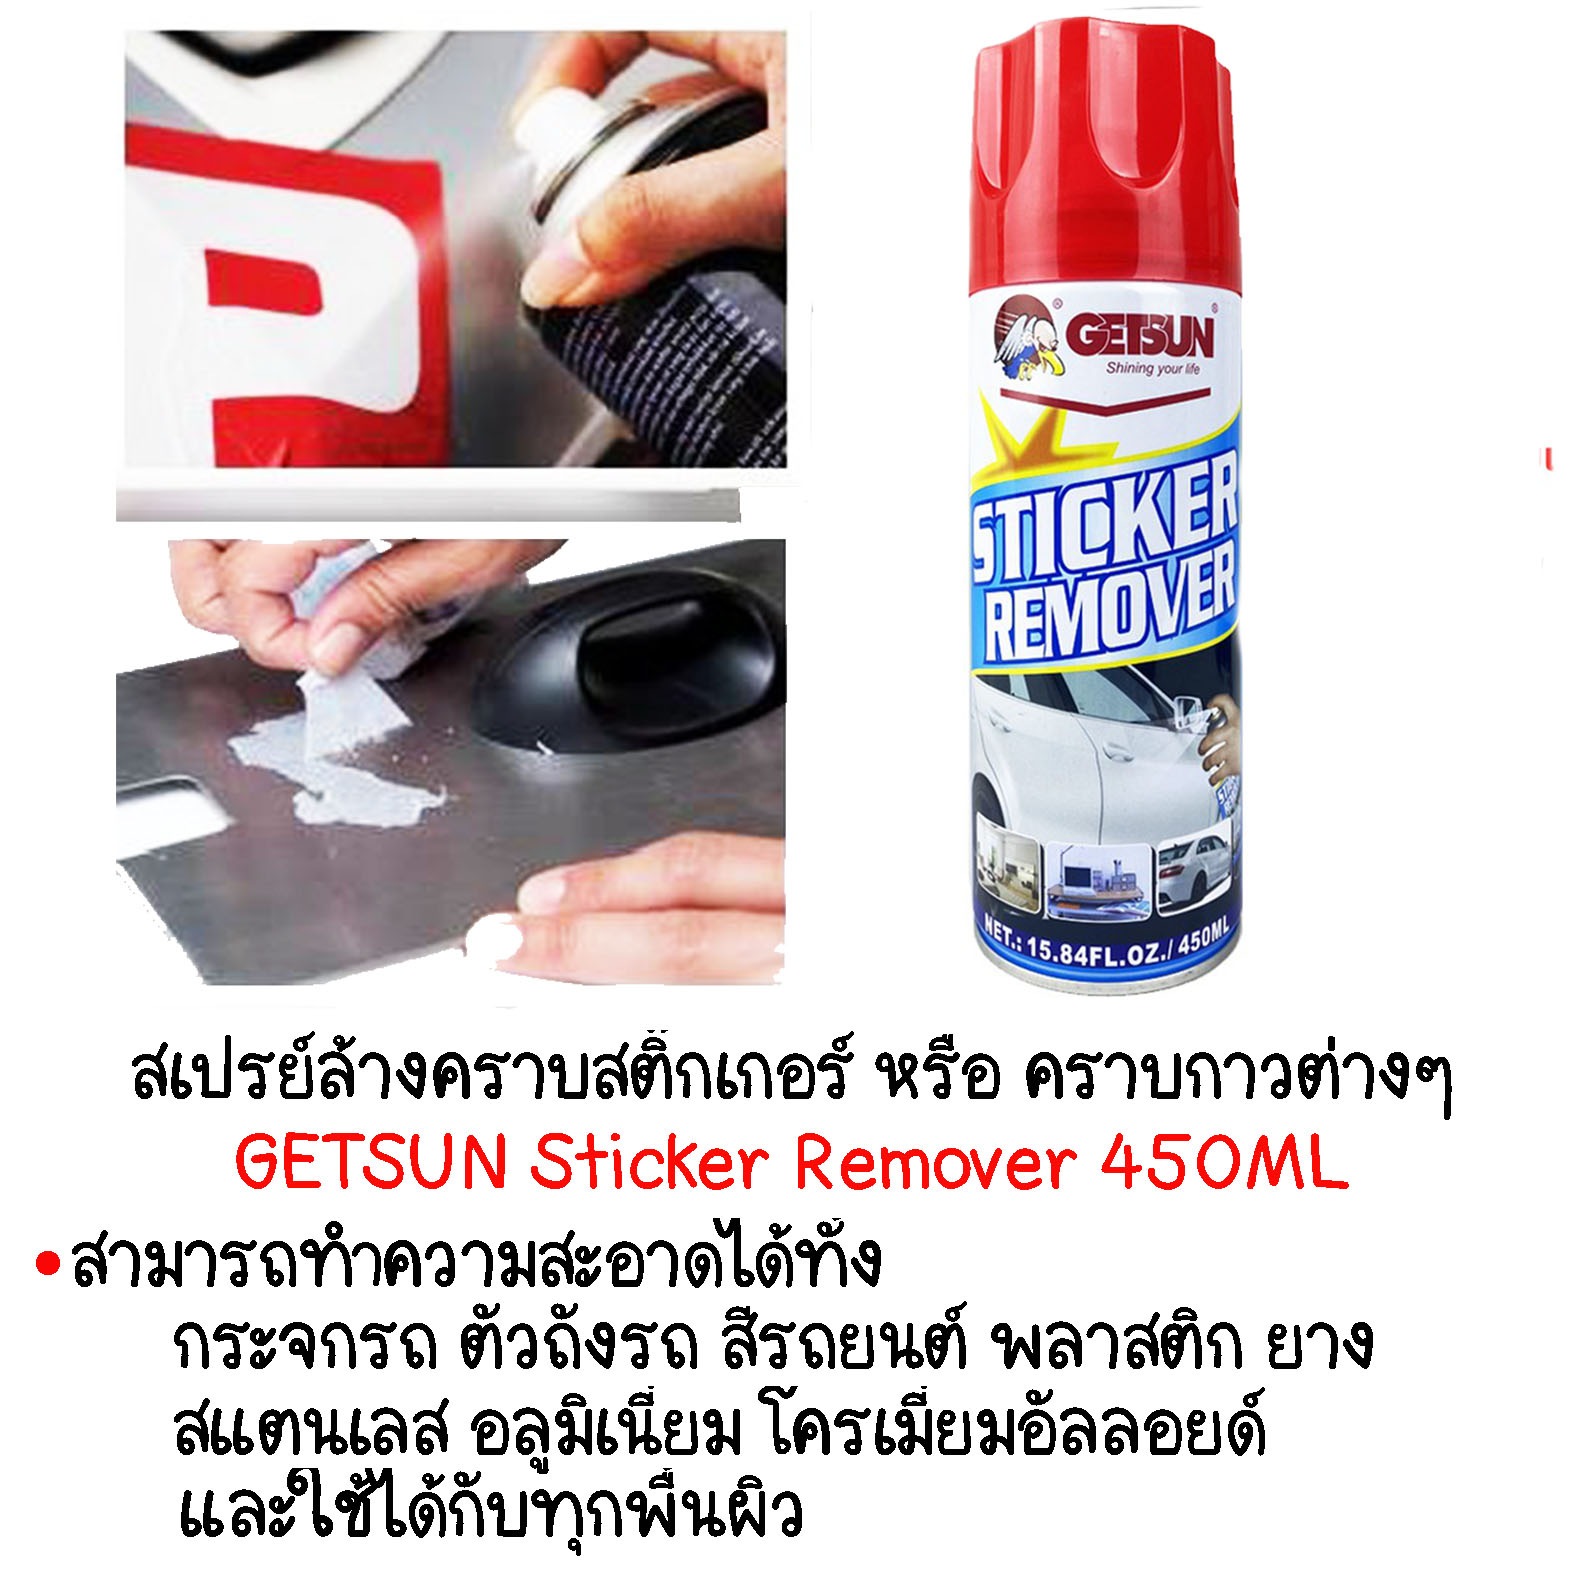 GETSUN Sticker Remover 450ml